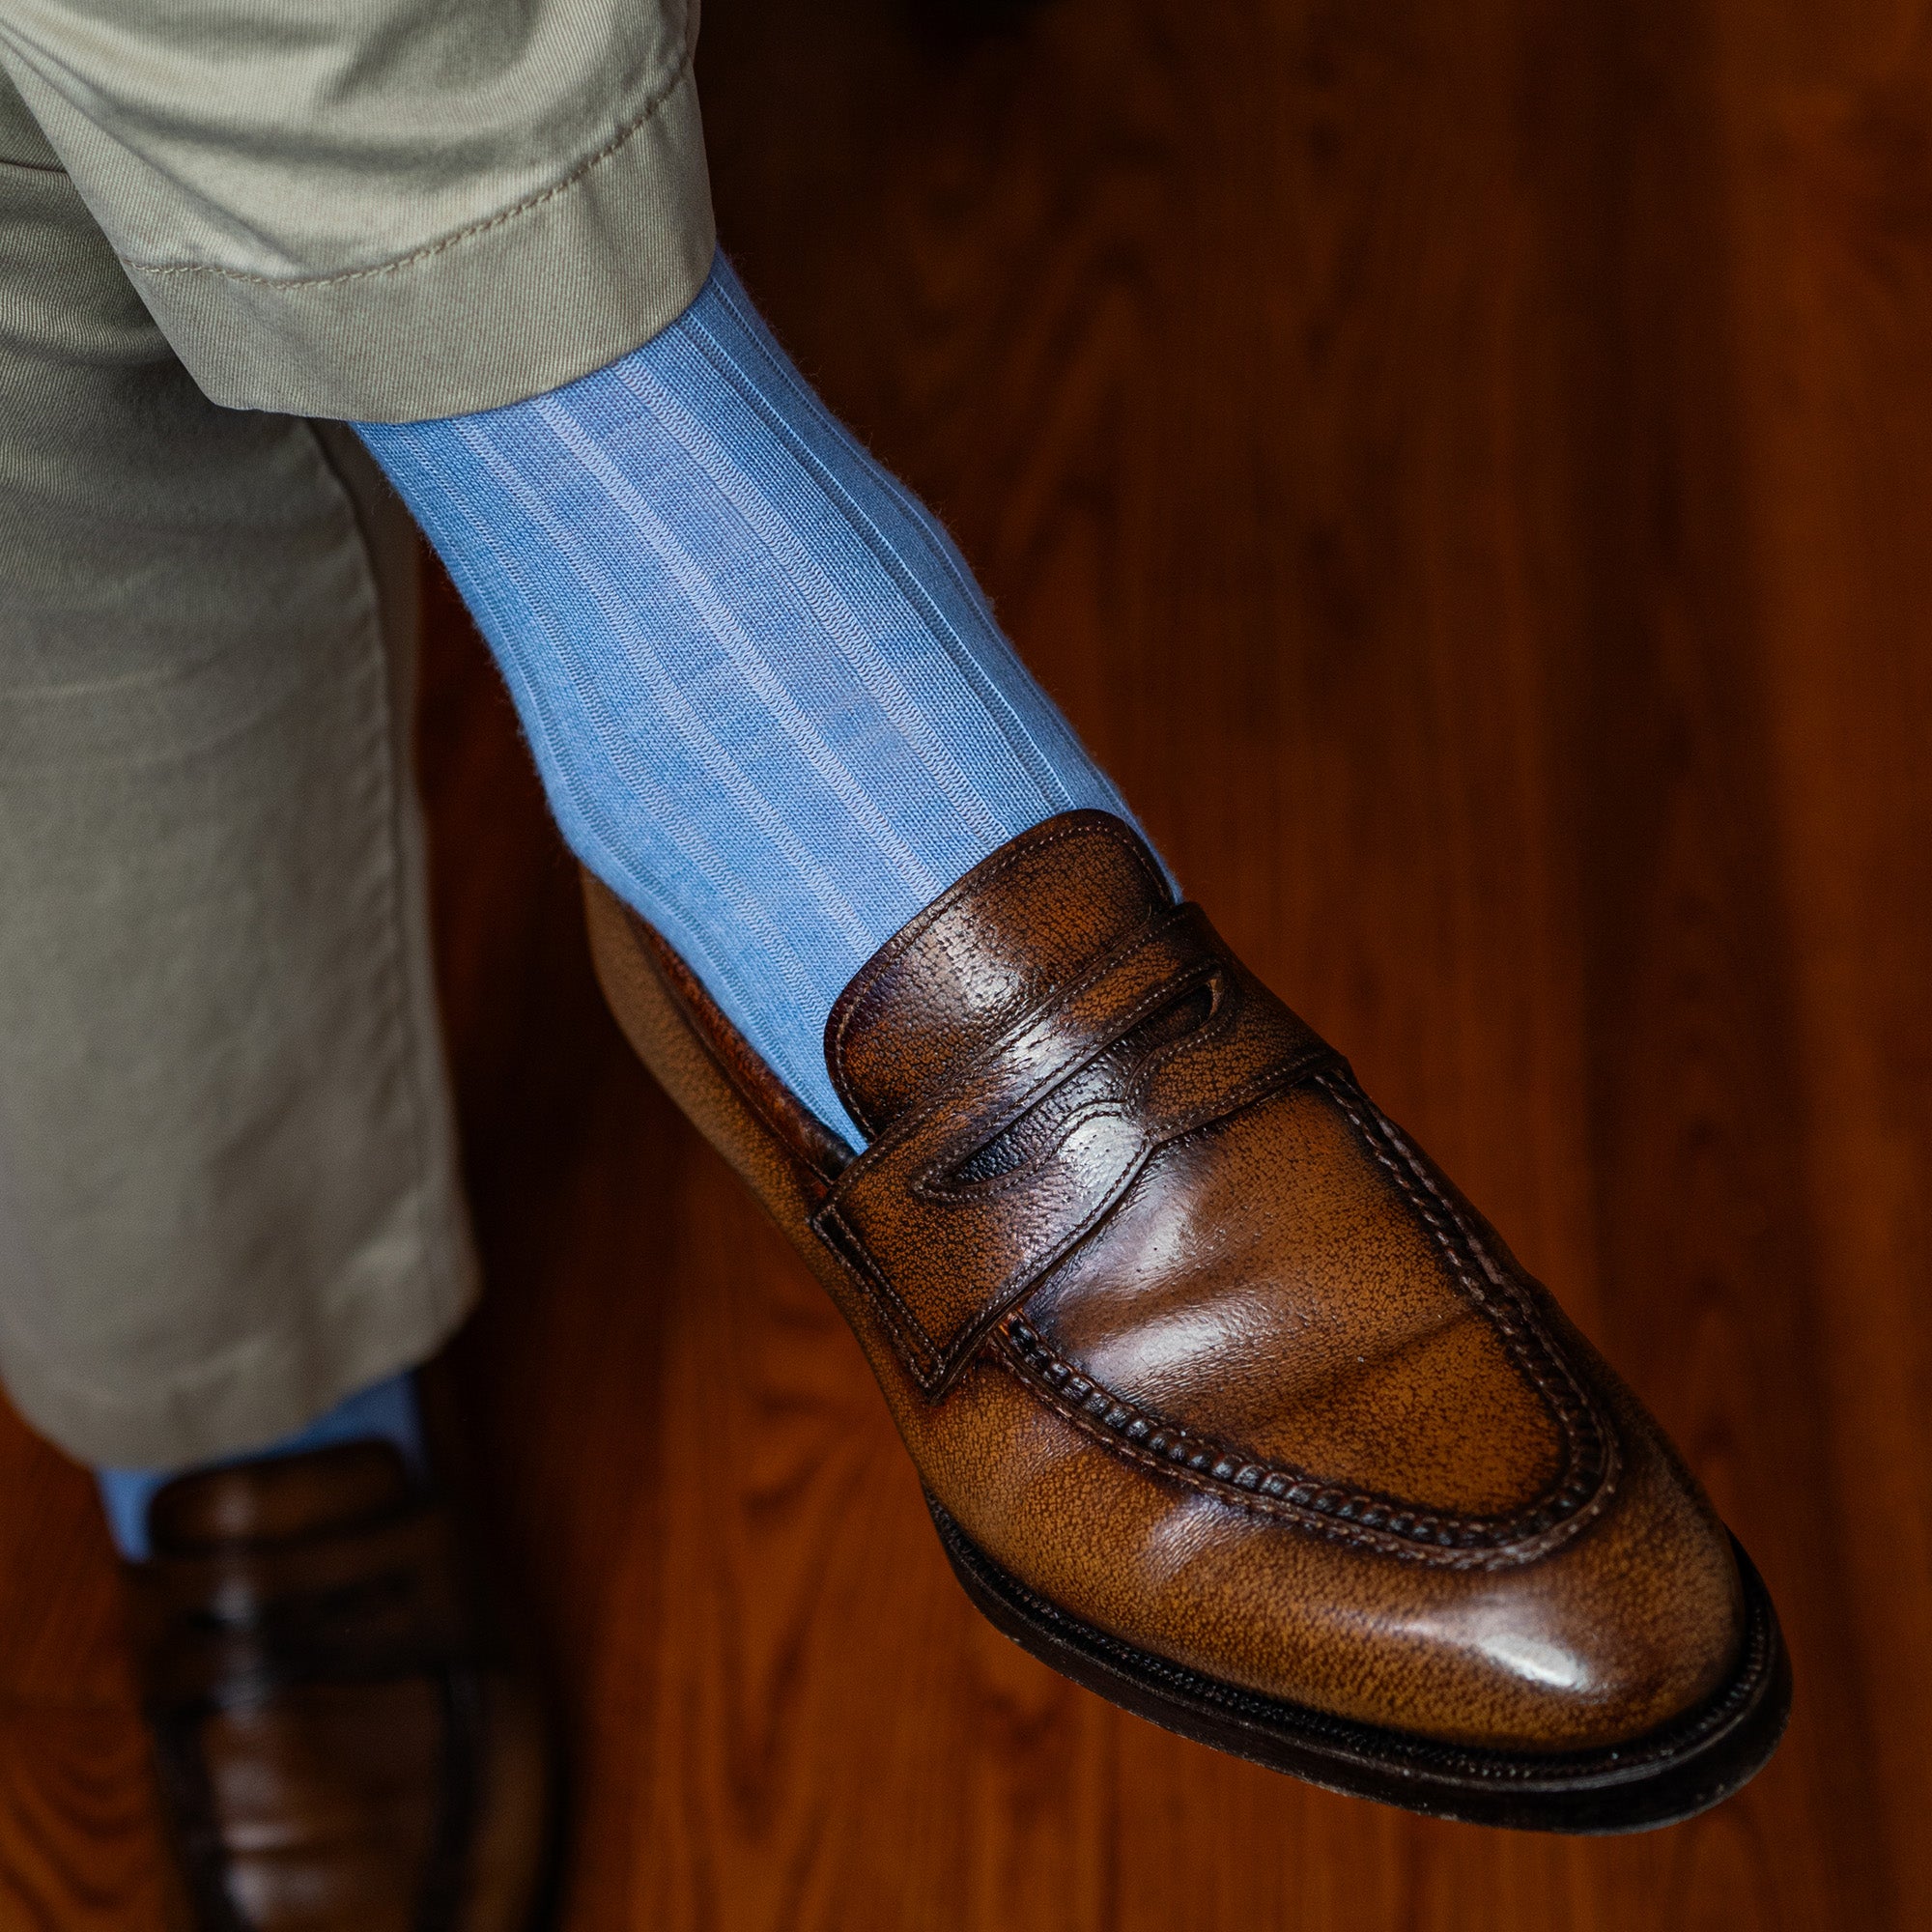 man wearing light blue wool dress socks crossing legs